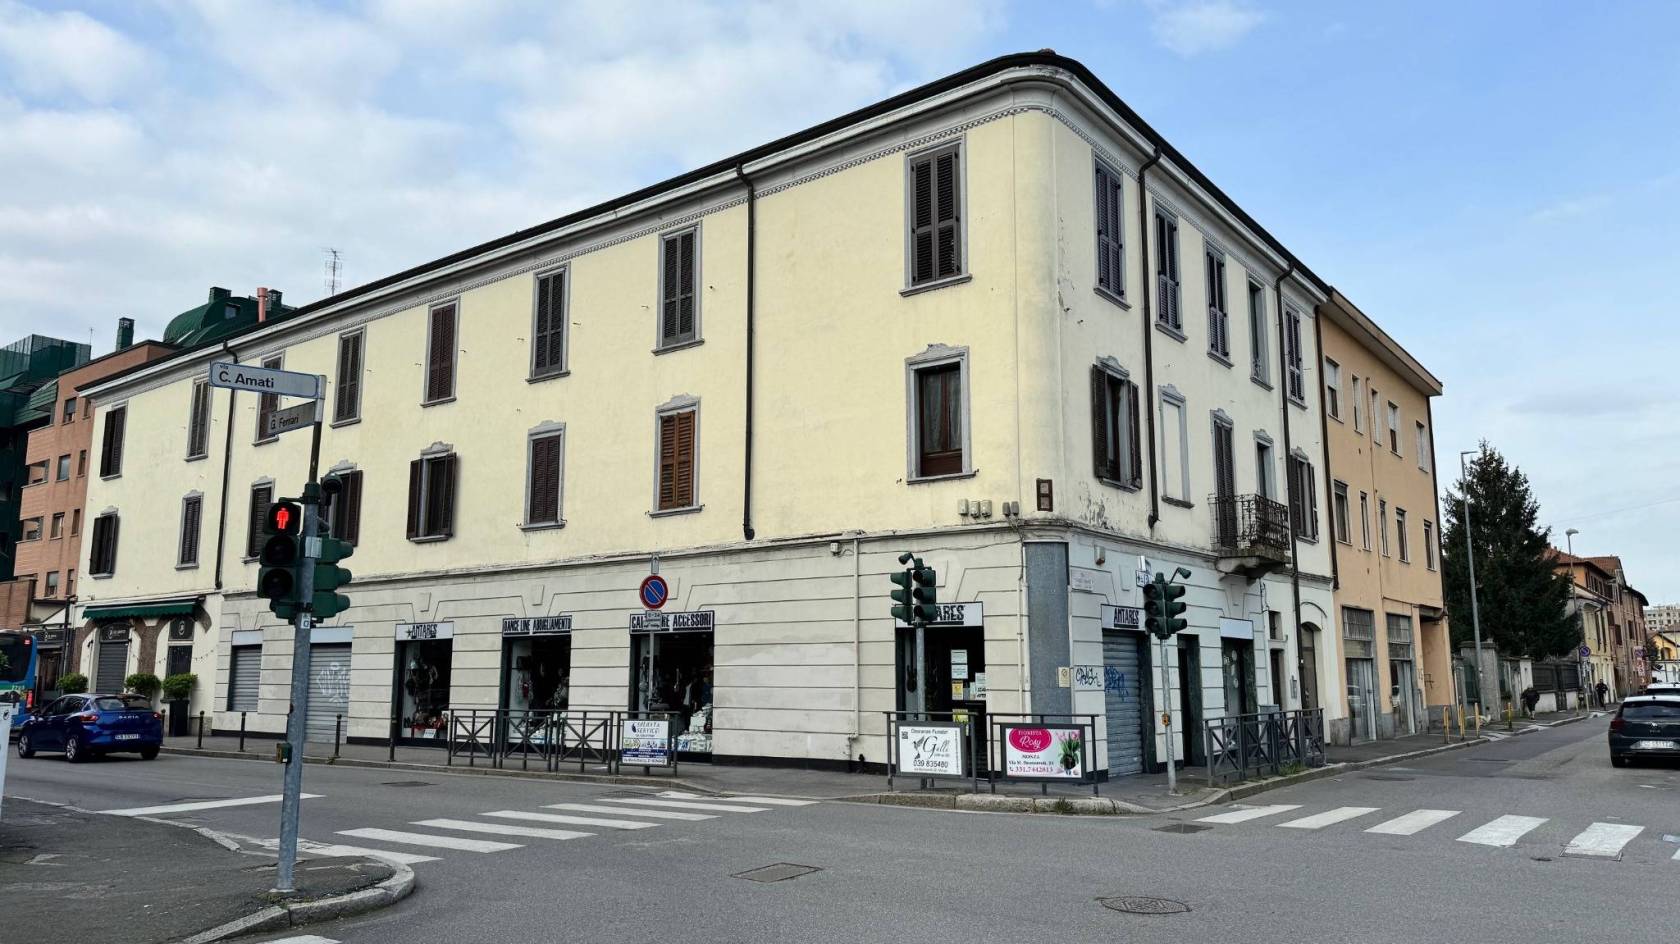 Bellissimo appartamento stabile vecchia Milano, elegante stabile d'epoca. L'immobile si trova al piano primo ed è composto da un accogliente 